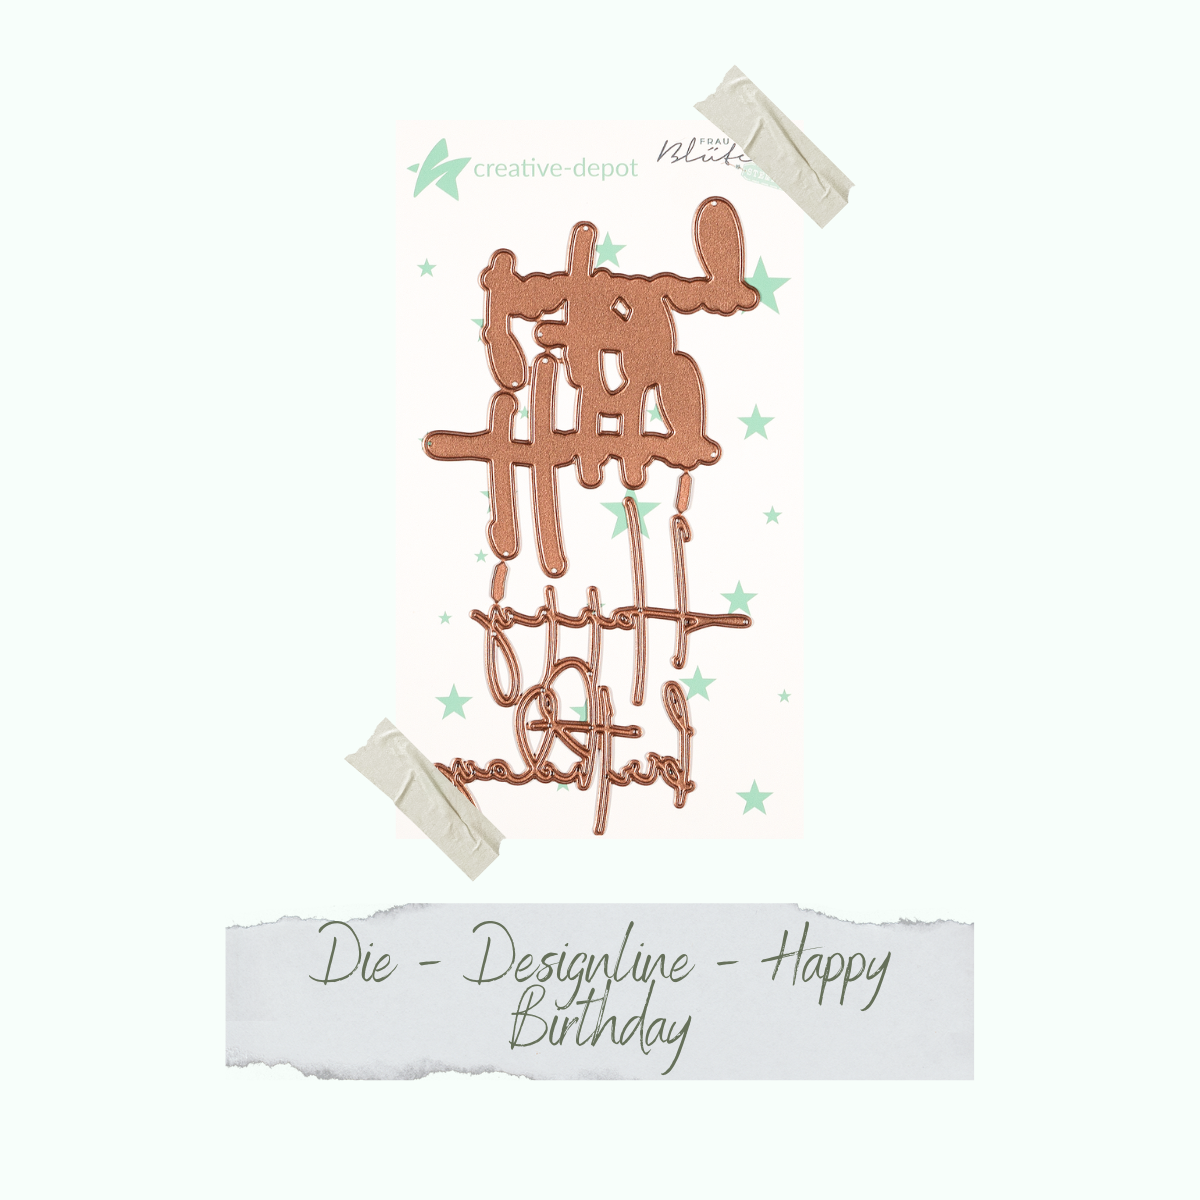 Die - Designline - Happy Birthday